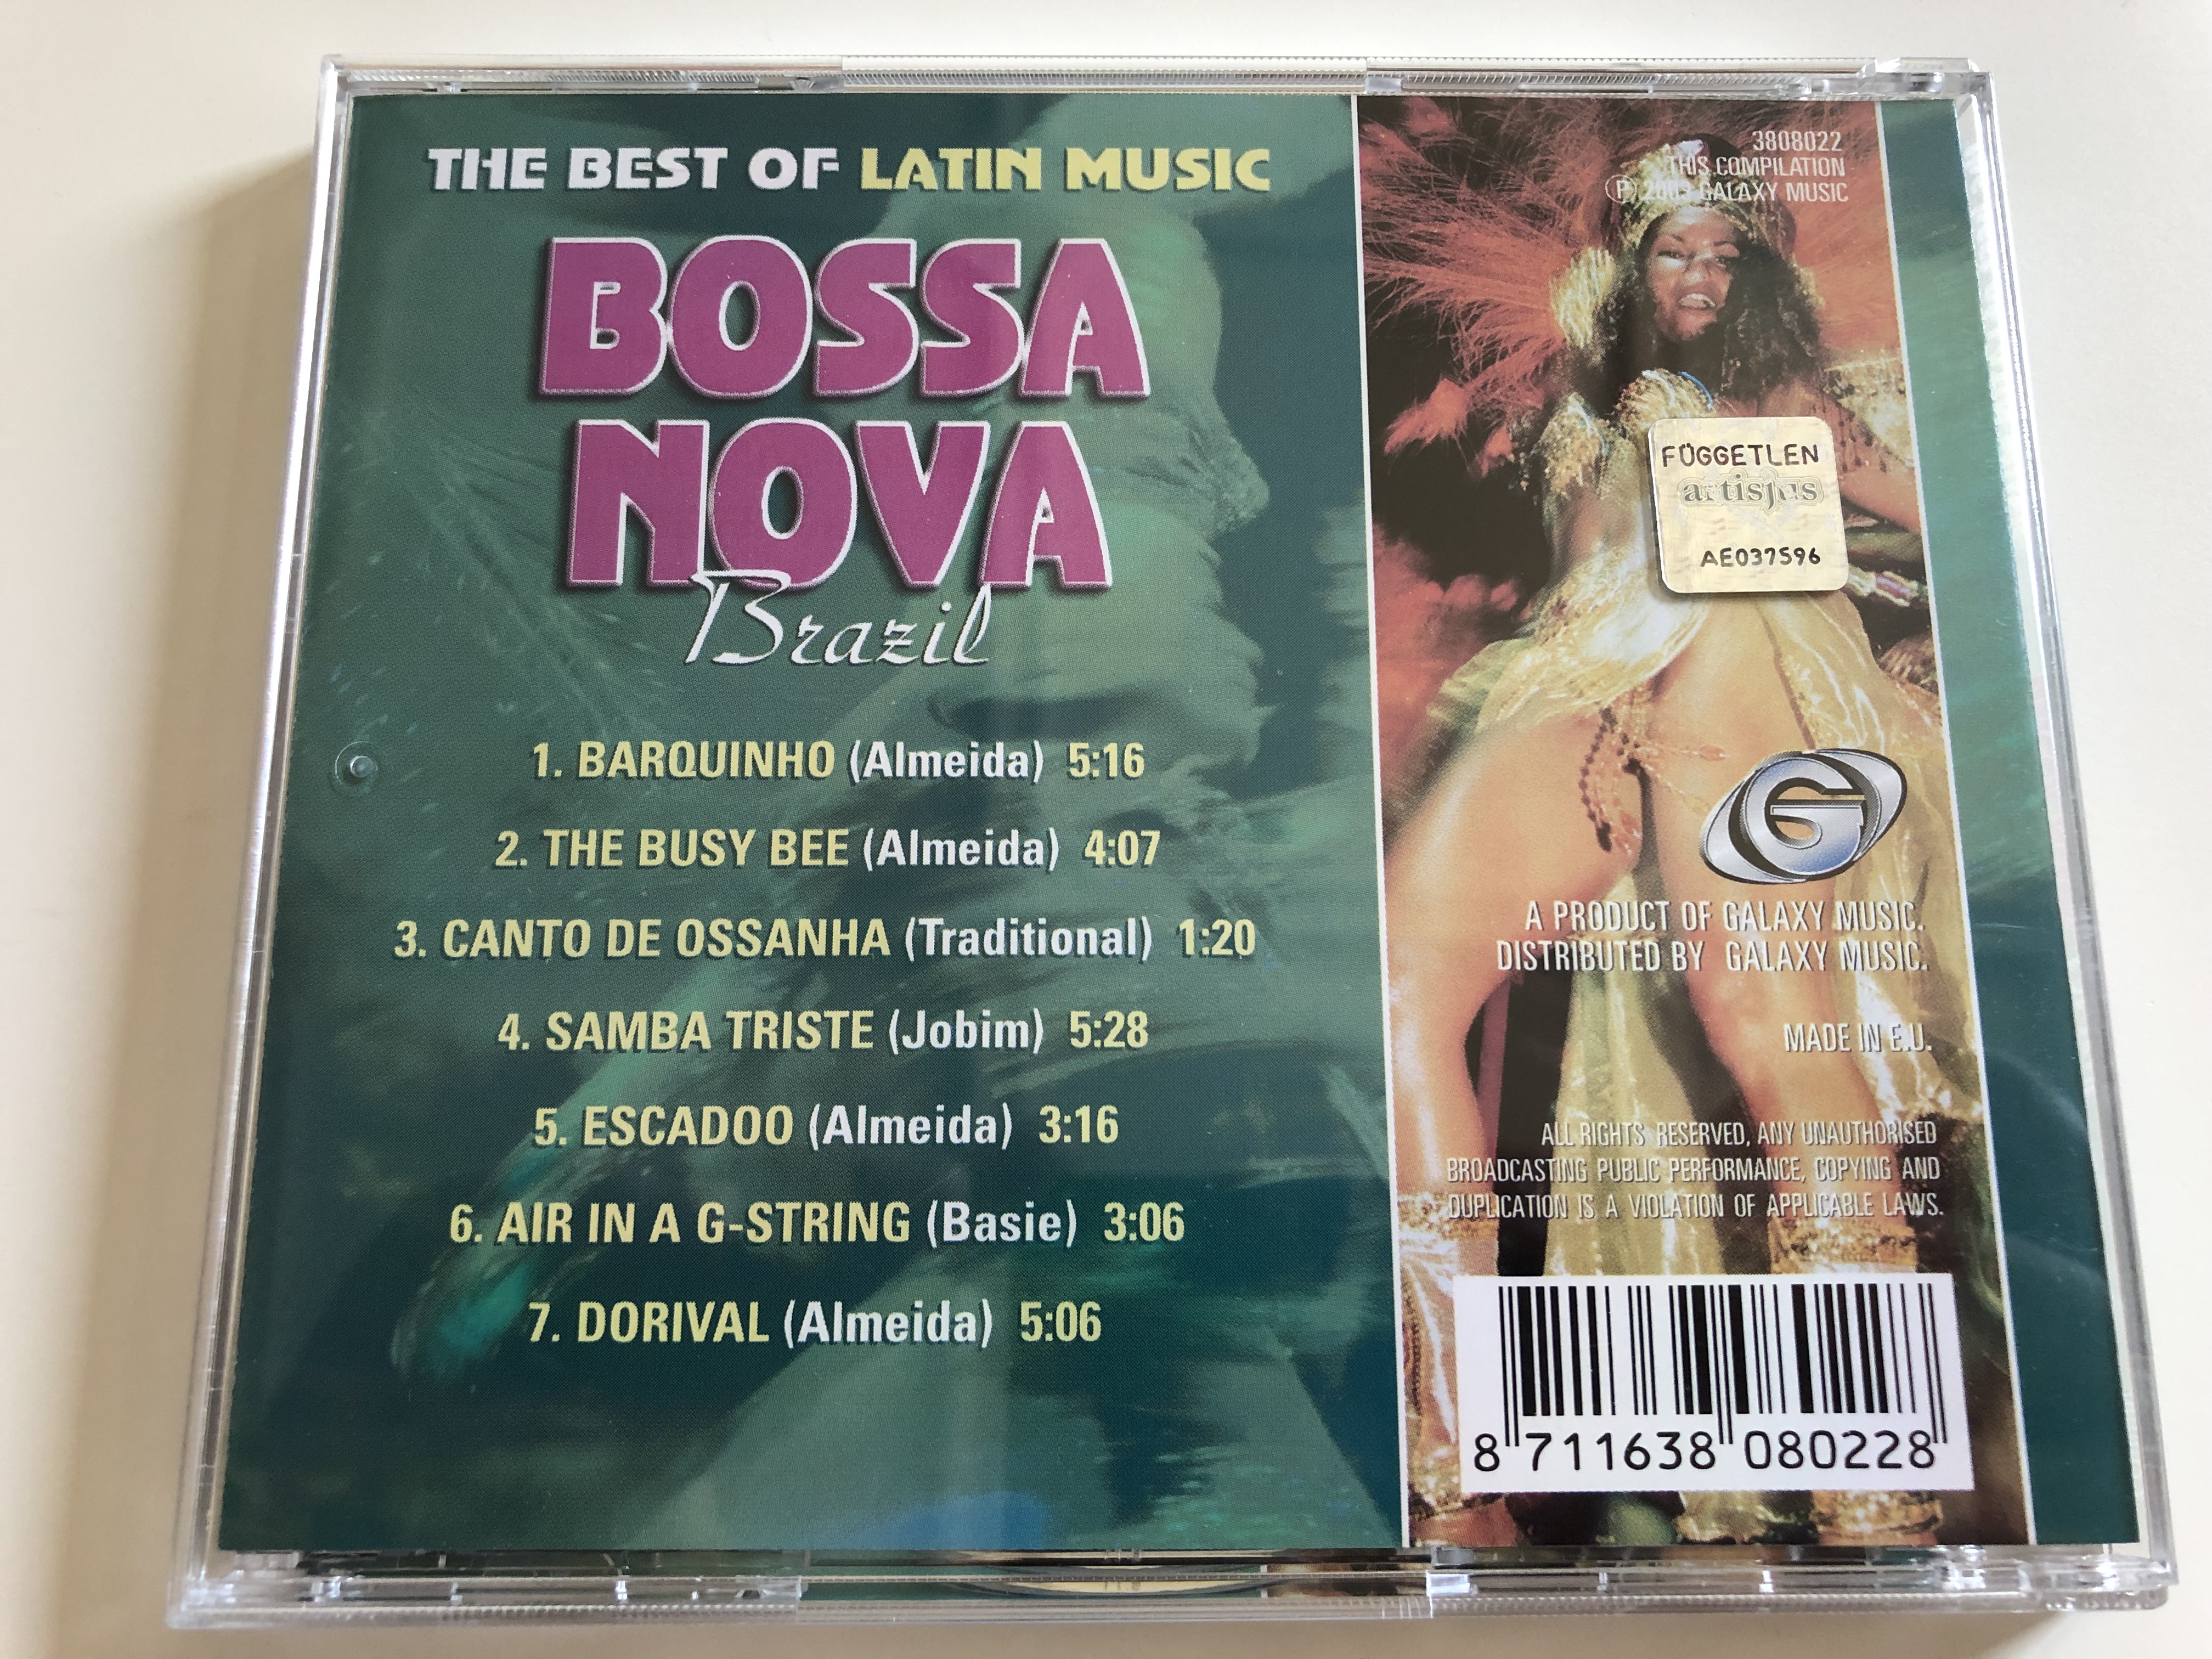 brazil-bossa-nova-laurindo-almeida-barquinho-escadoo-canto-de-ossanha-and-many-more-hits-the-best-of-latin-music-galaxy-music-audio-cd-2003-3808022-4-.jpg